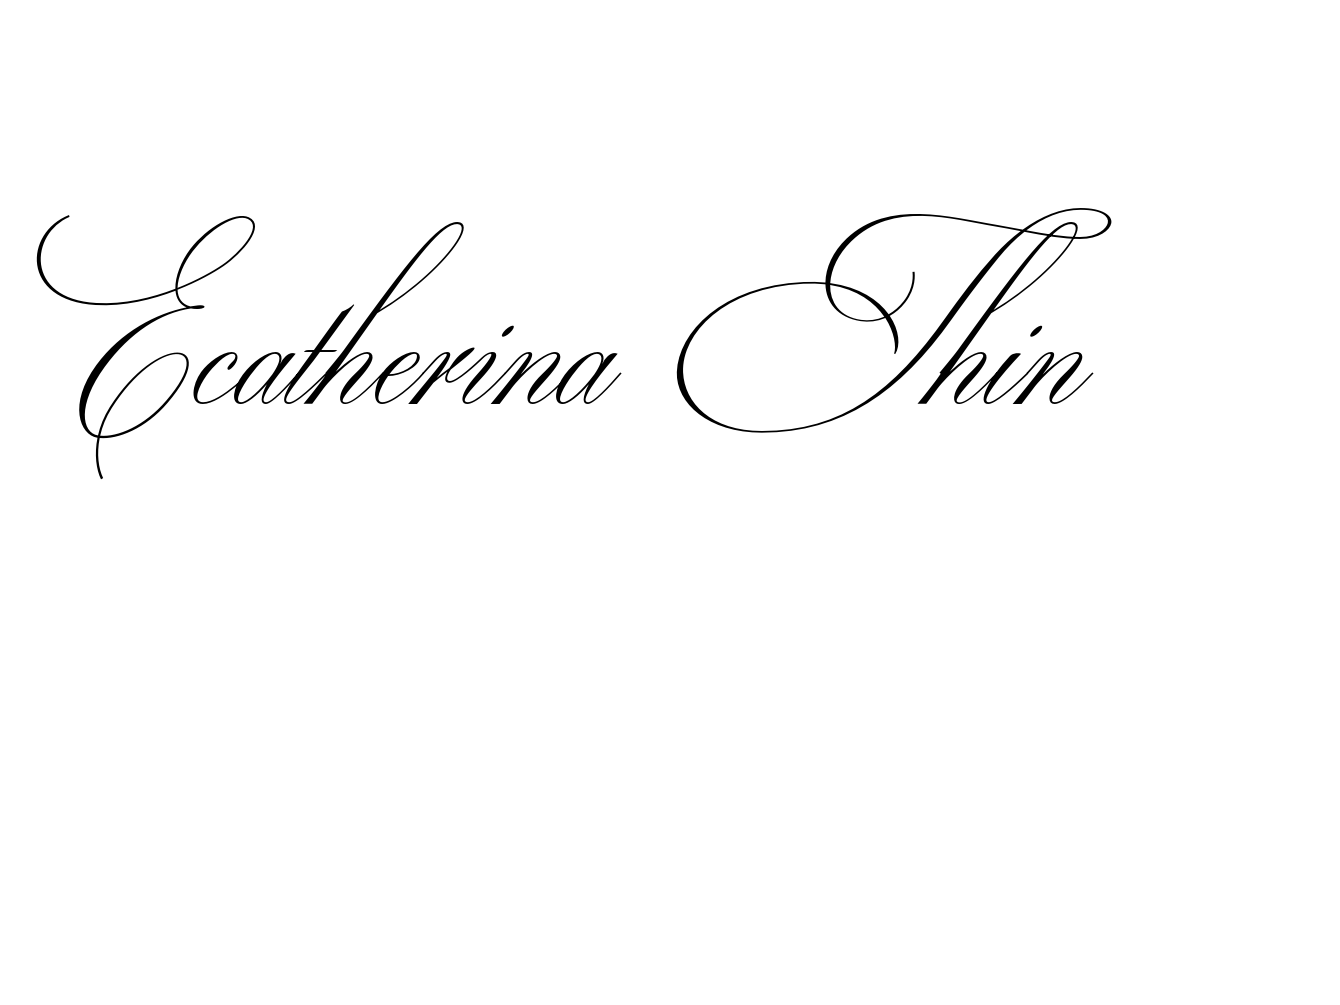 Ecatherina Thin